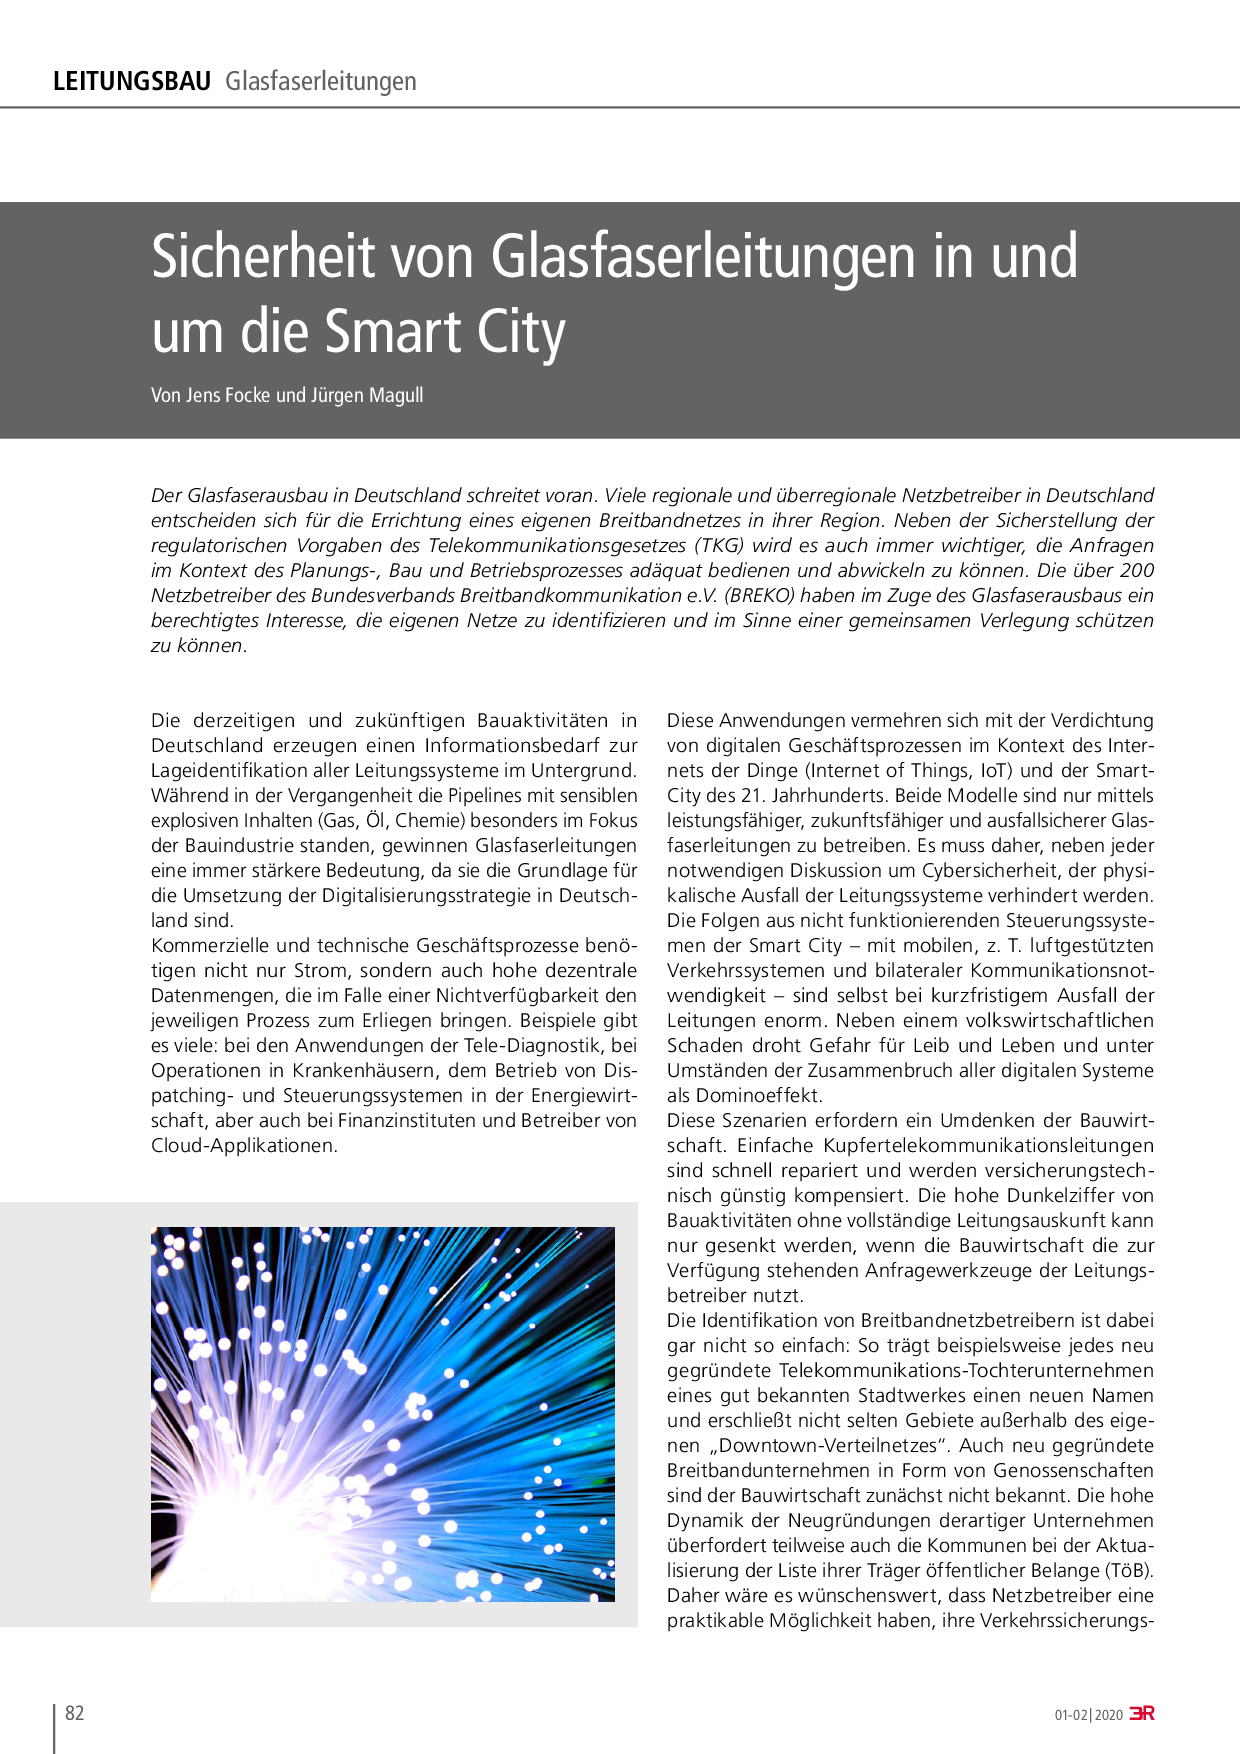 Sicherheit von Glasfaserleitungen in und um die Smart City